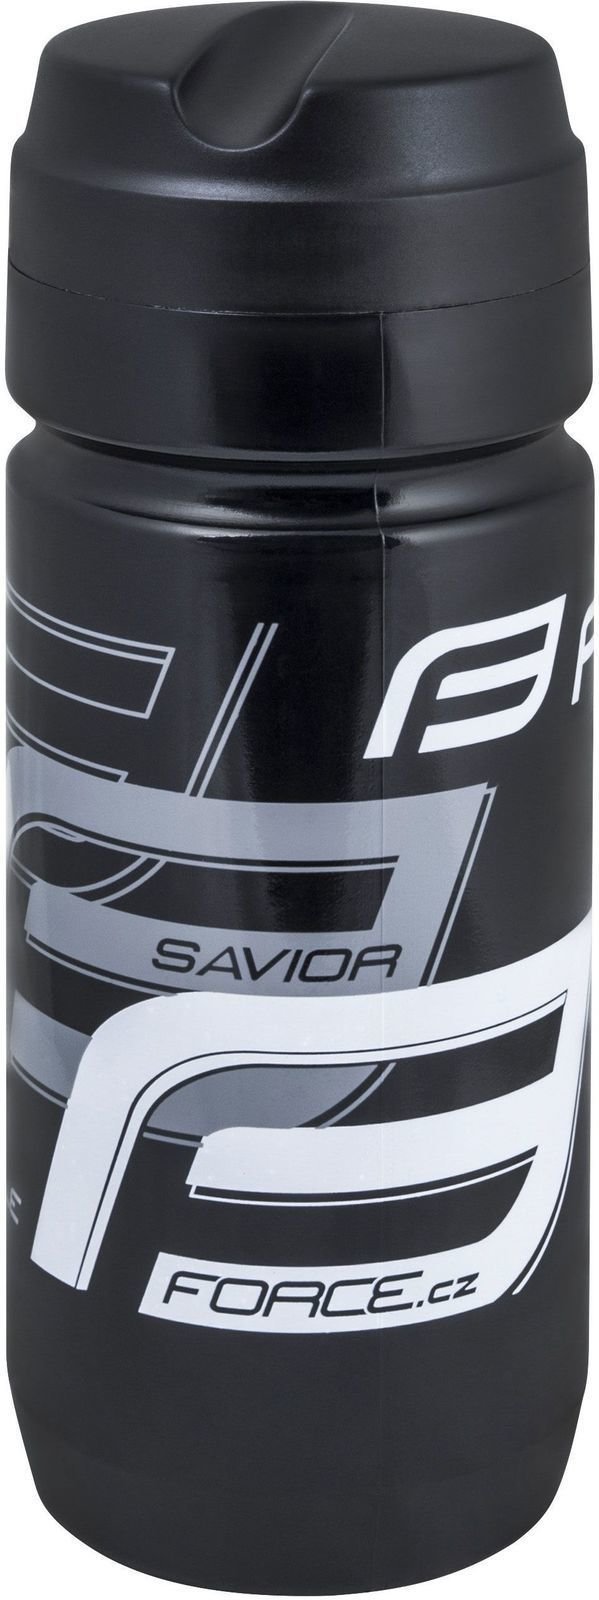 Fahrradflasche Force Tool Holder Bottle Black/Grey/White 750 ml Fahrradflasche